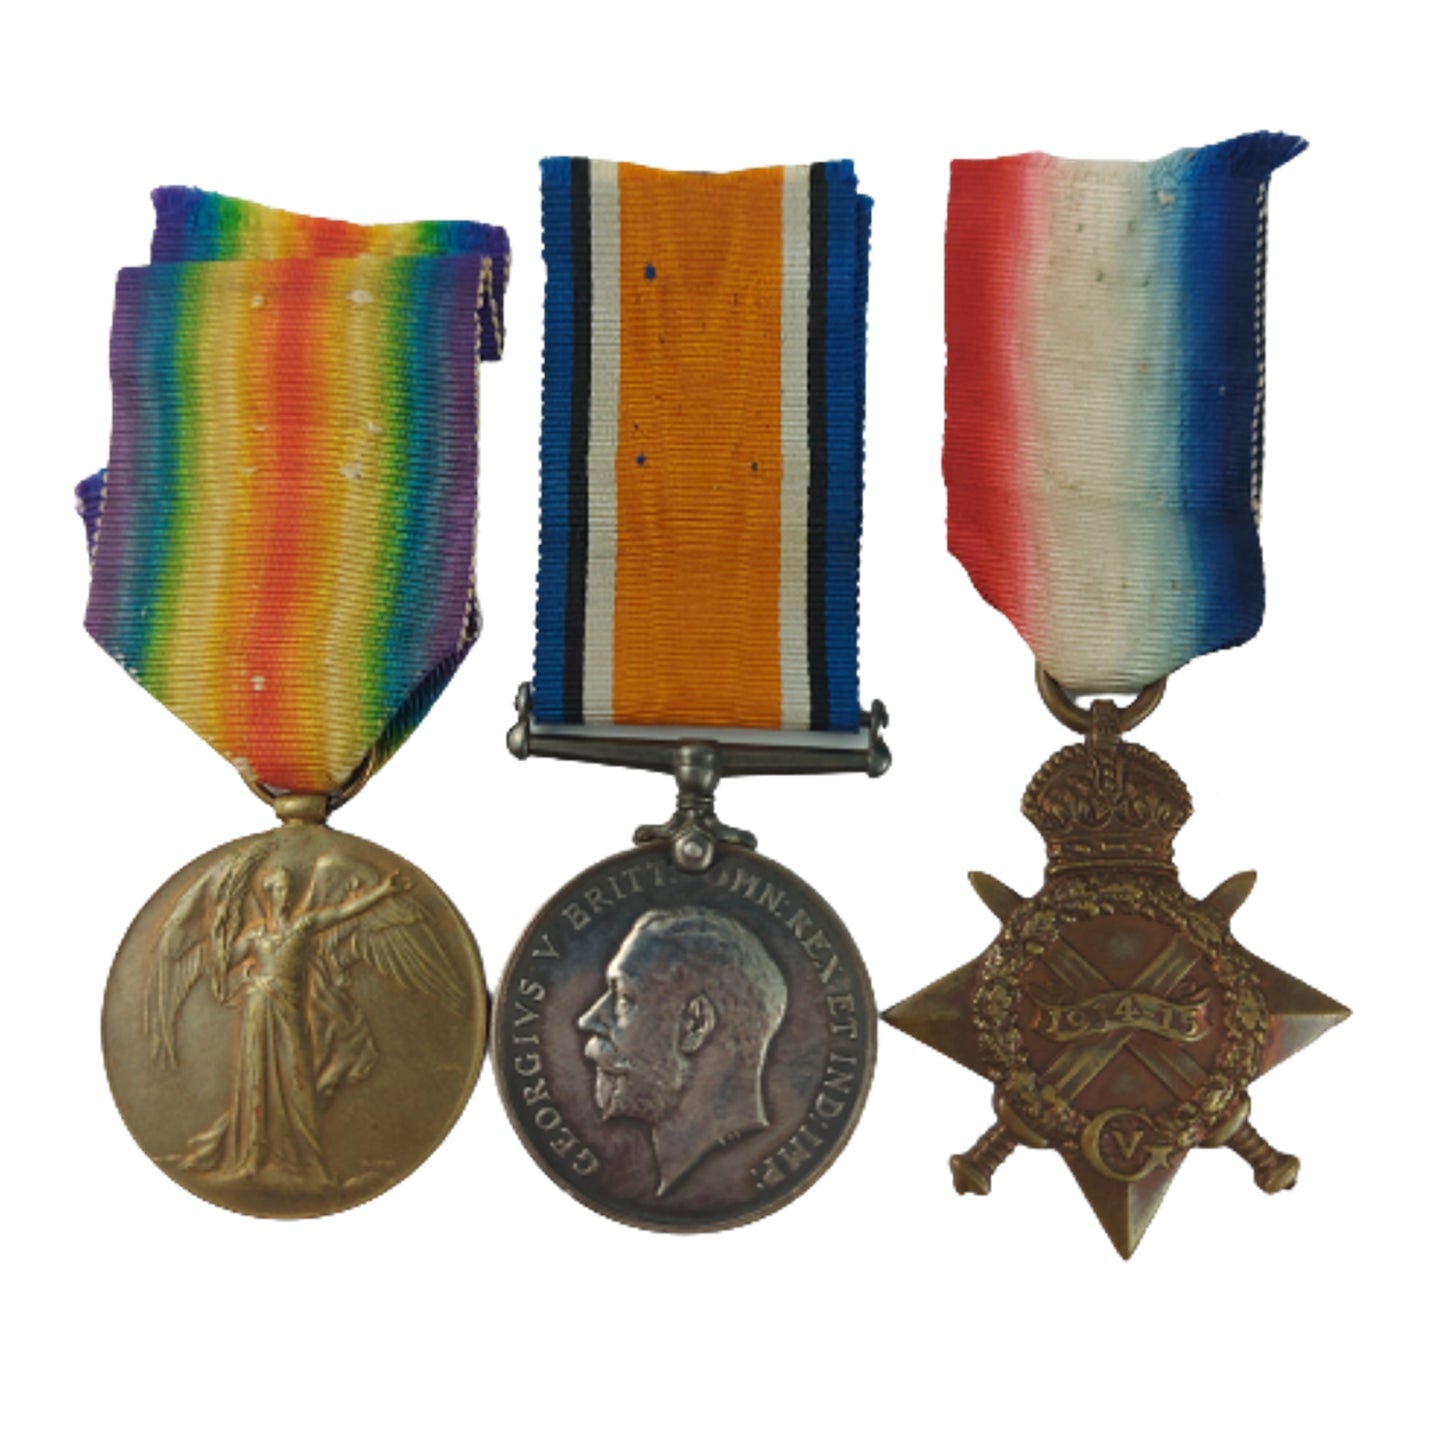 WW1 Canadian Medal Trio - 10th Battalion Calgary Alberta